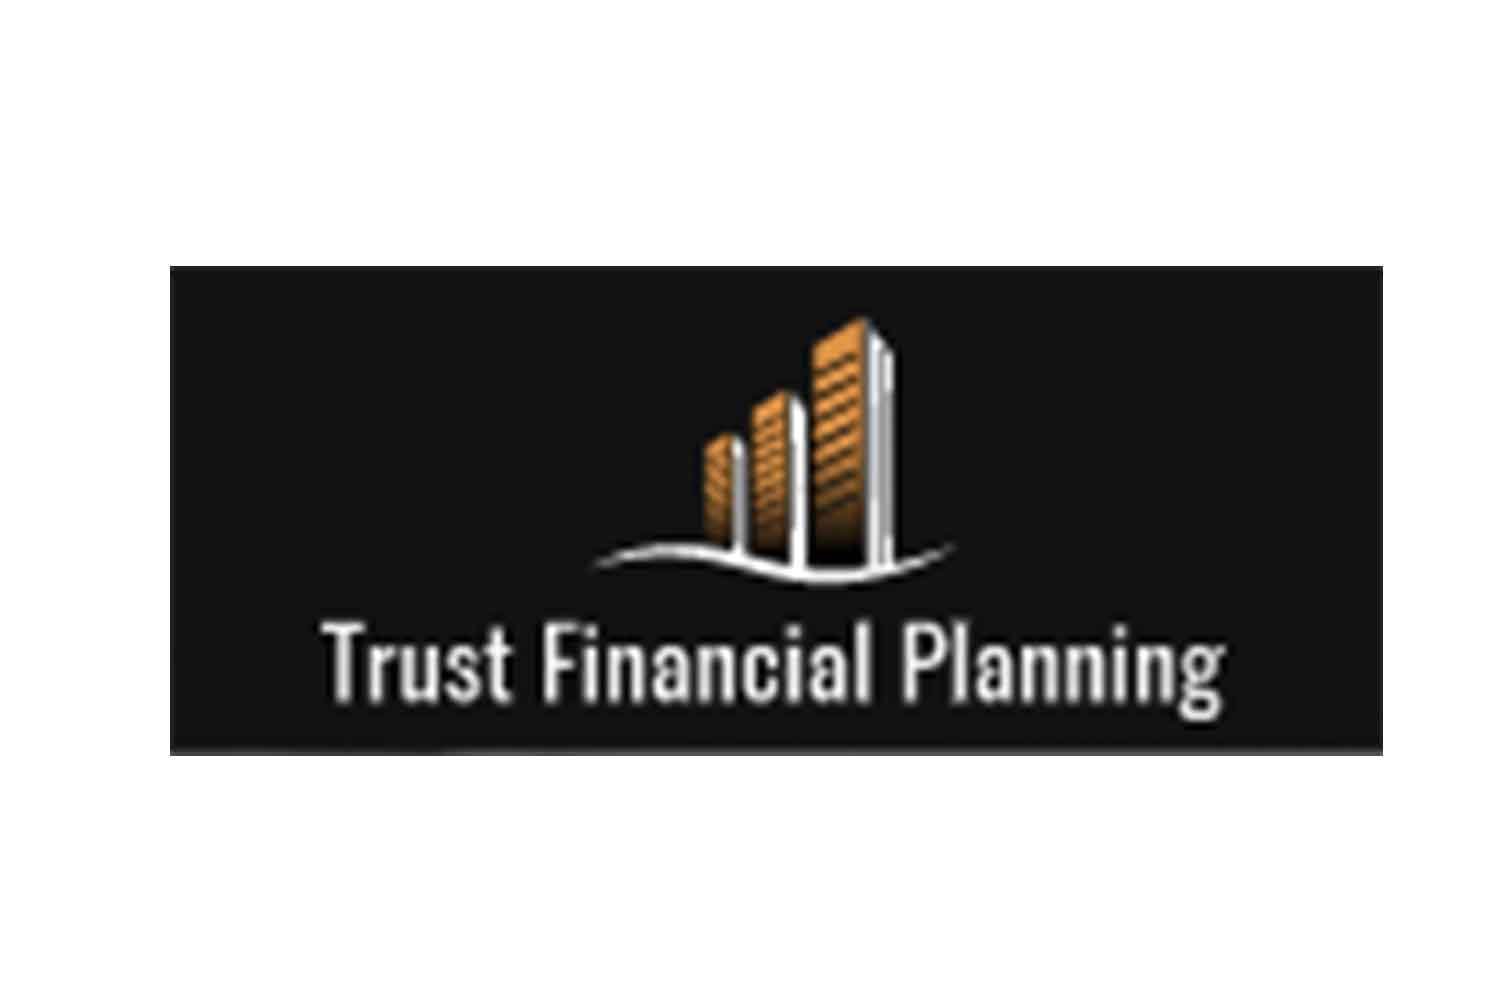 Trust Financial Planning: отзывы клиентов и проверка фактов